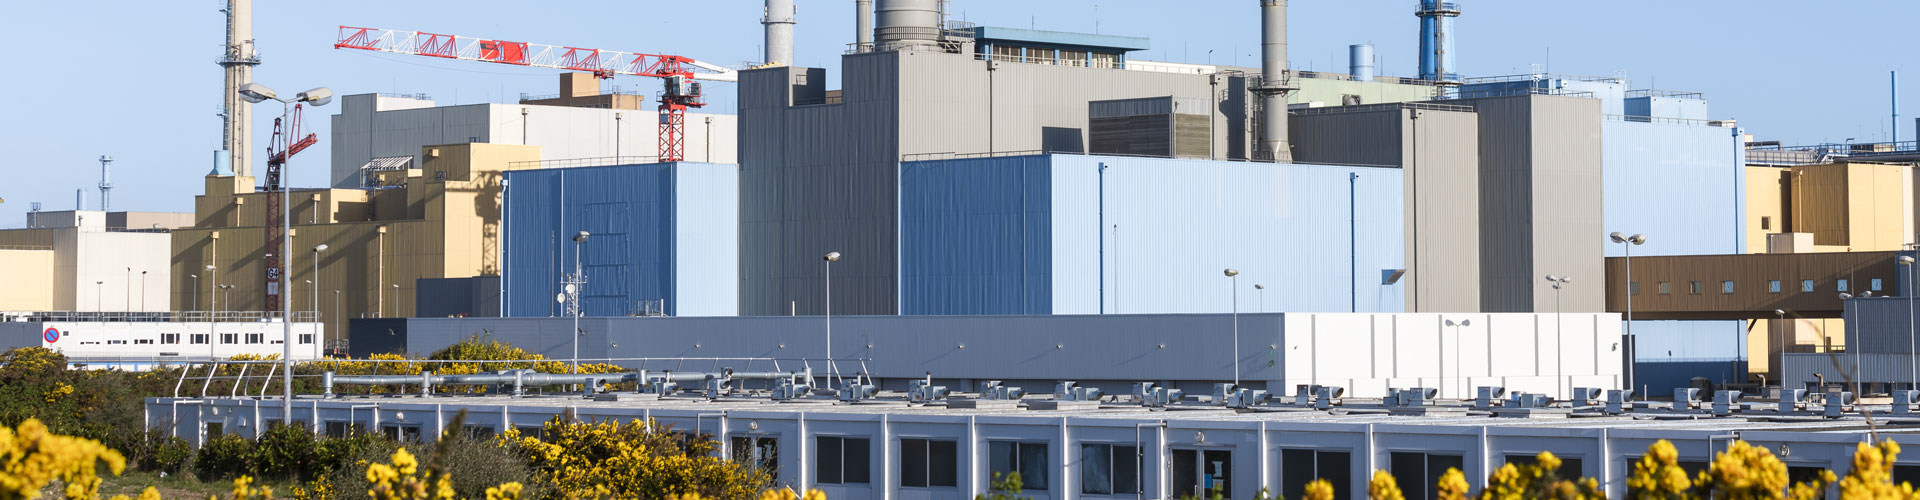 View of Orano la Hague plant, France